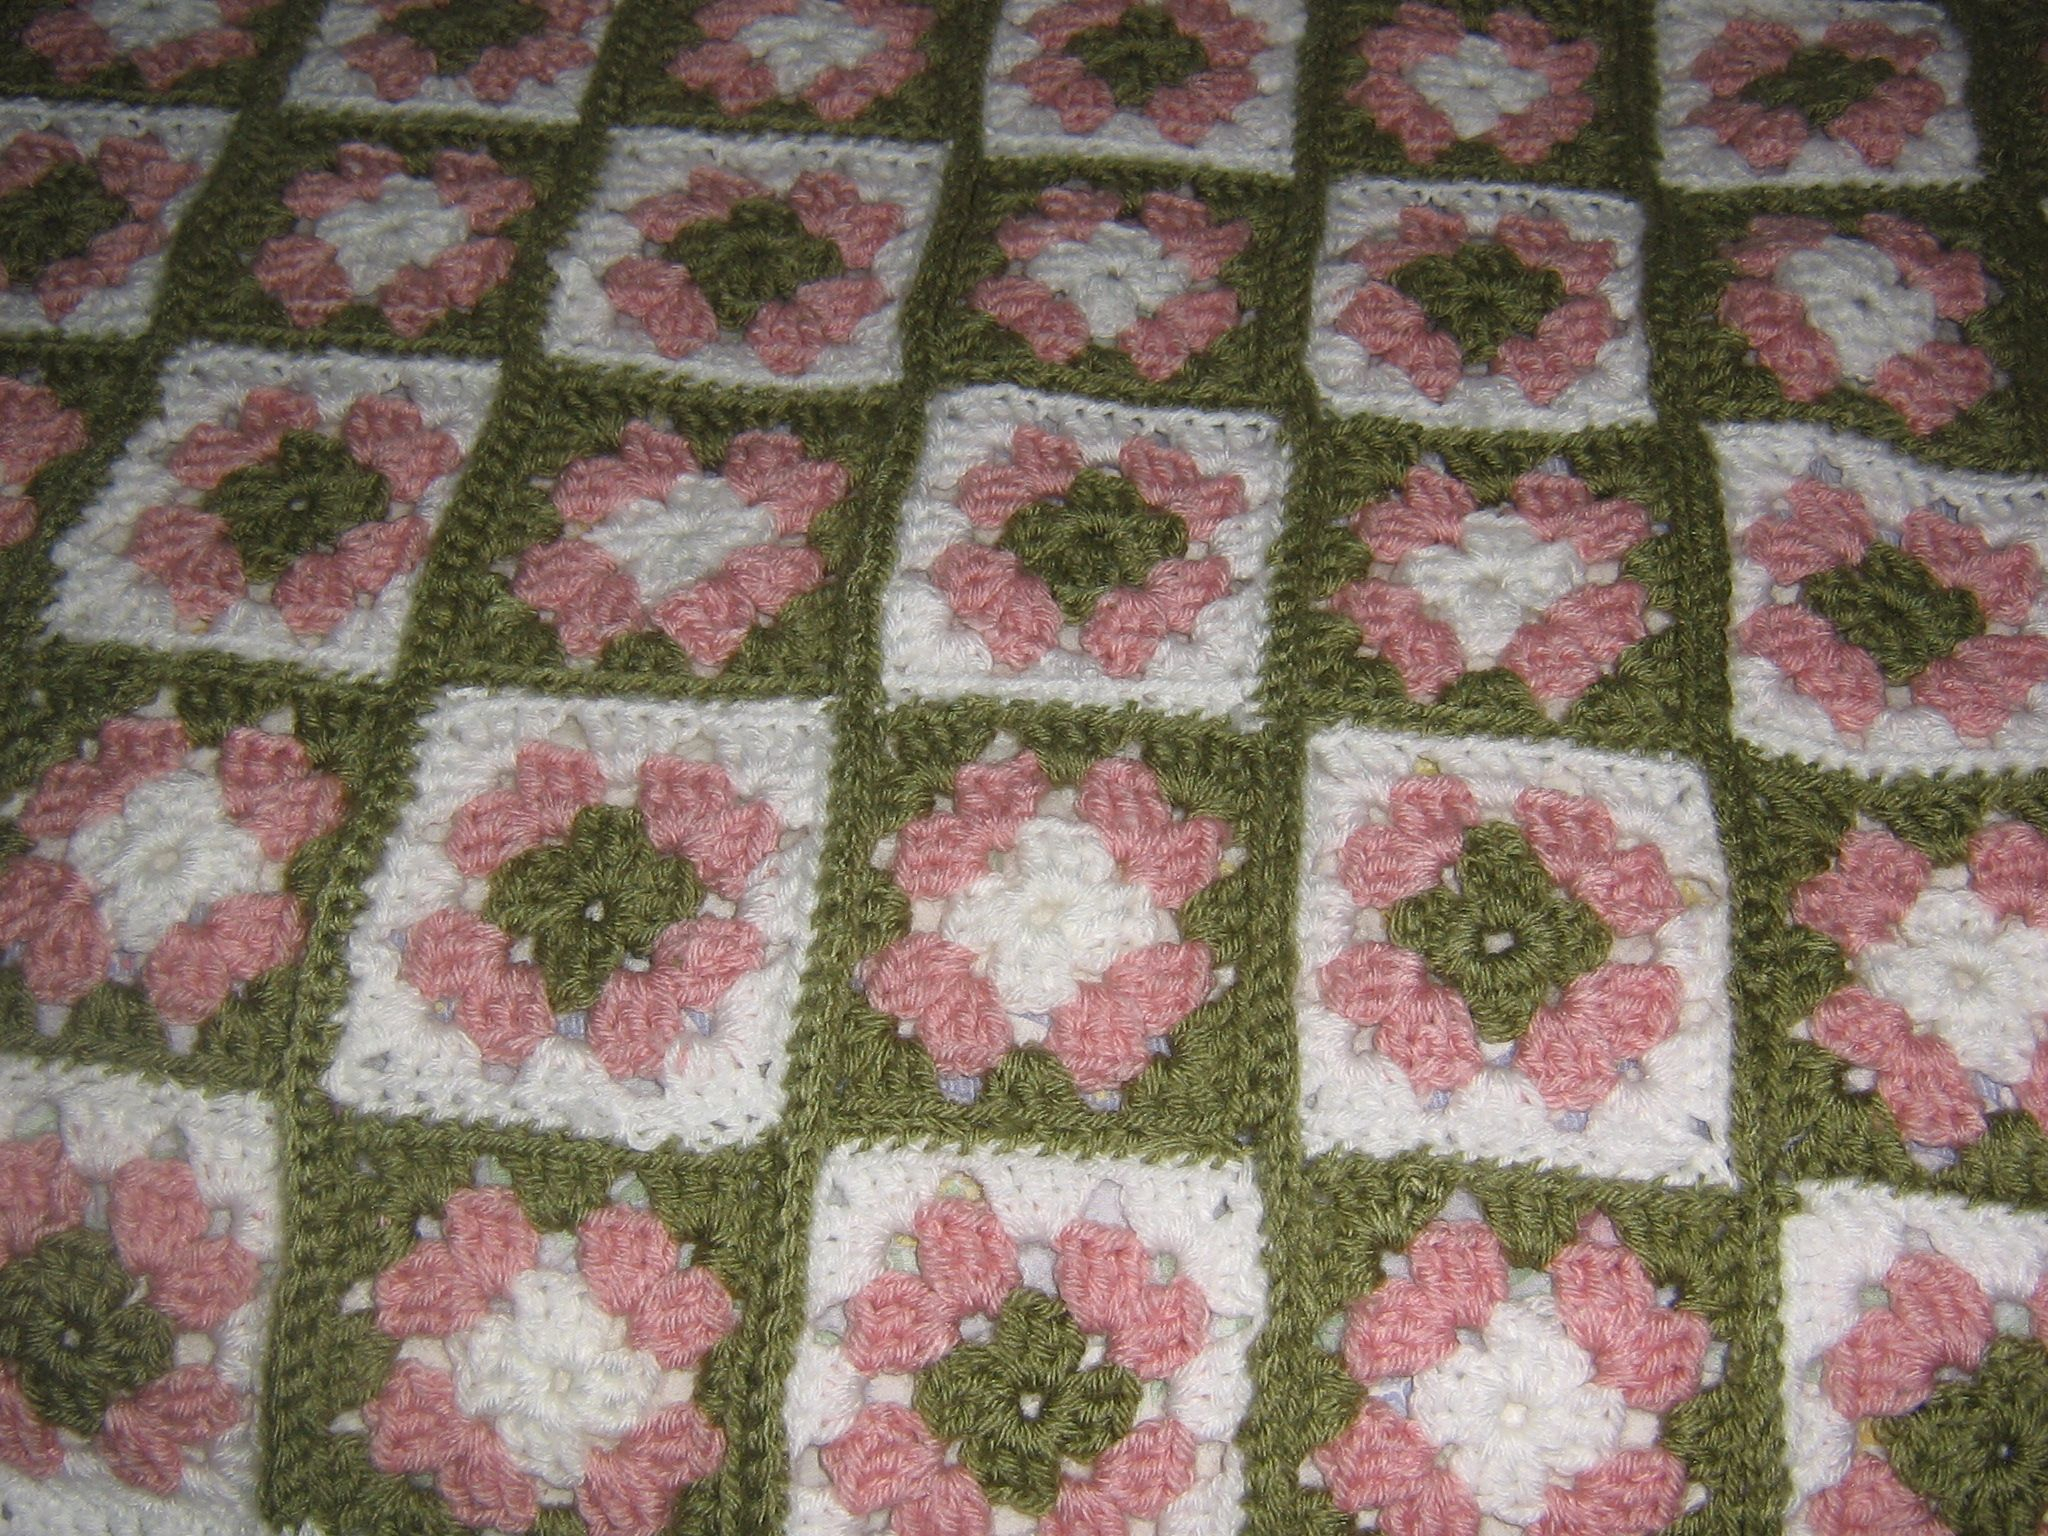 Crochet Sweet Pea Flower Pattern Sweet Pea Afghan Crochet Projects Pinterest Ba Girl Blankets